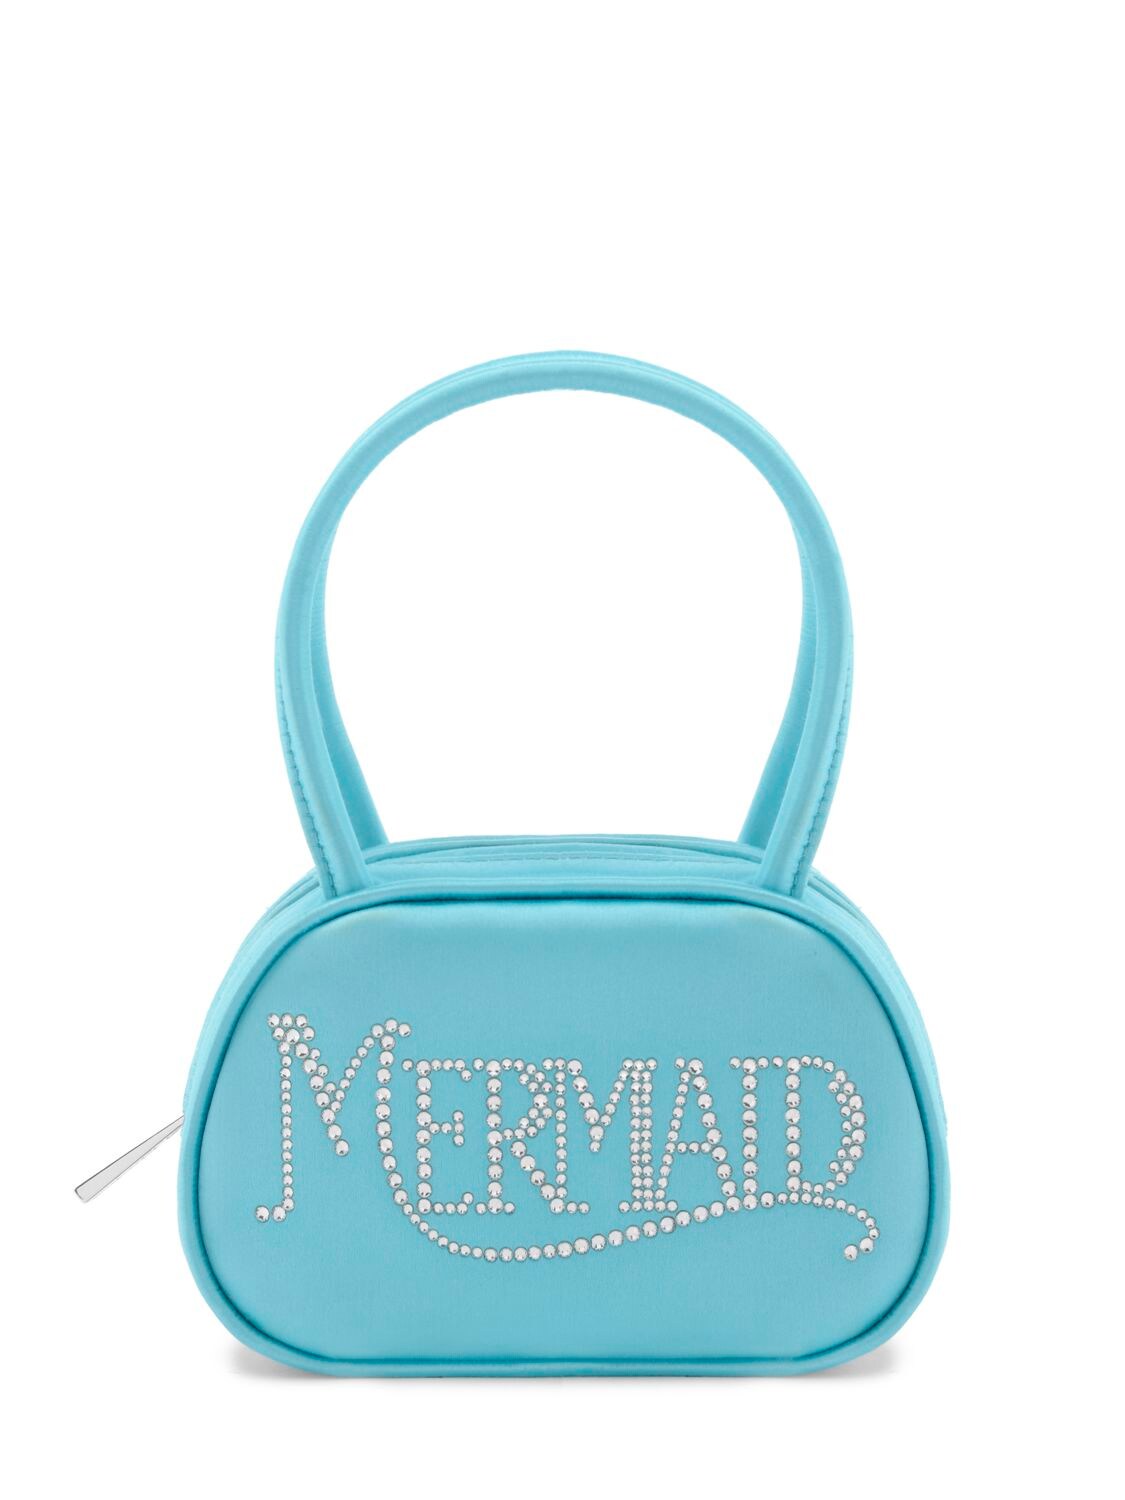 Superamini Mermaid Satin Top Handle Bag